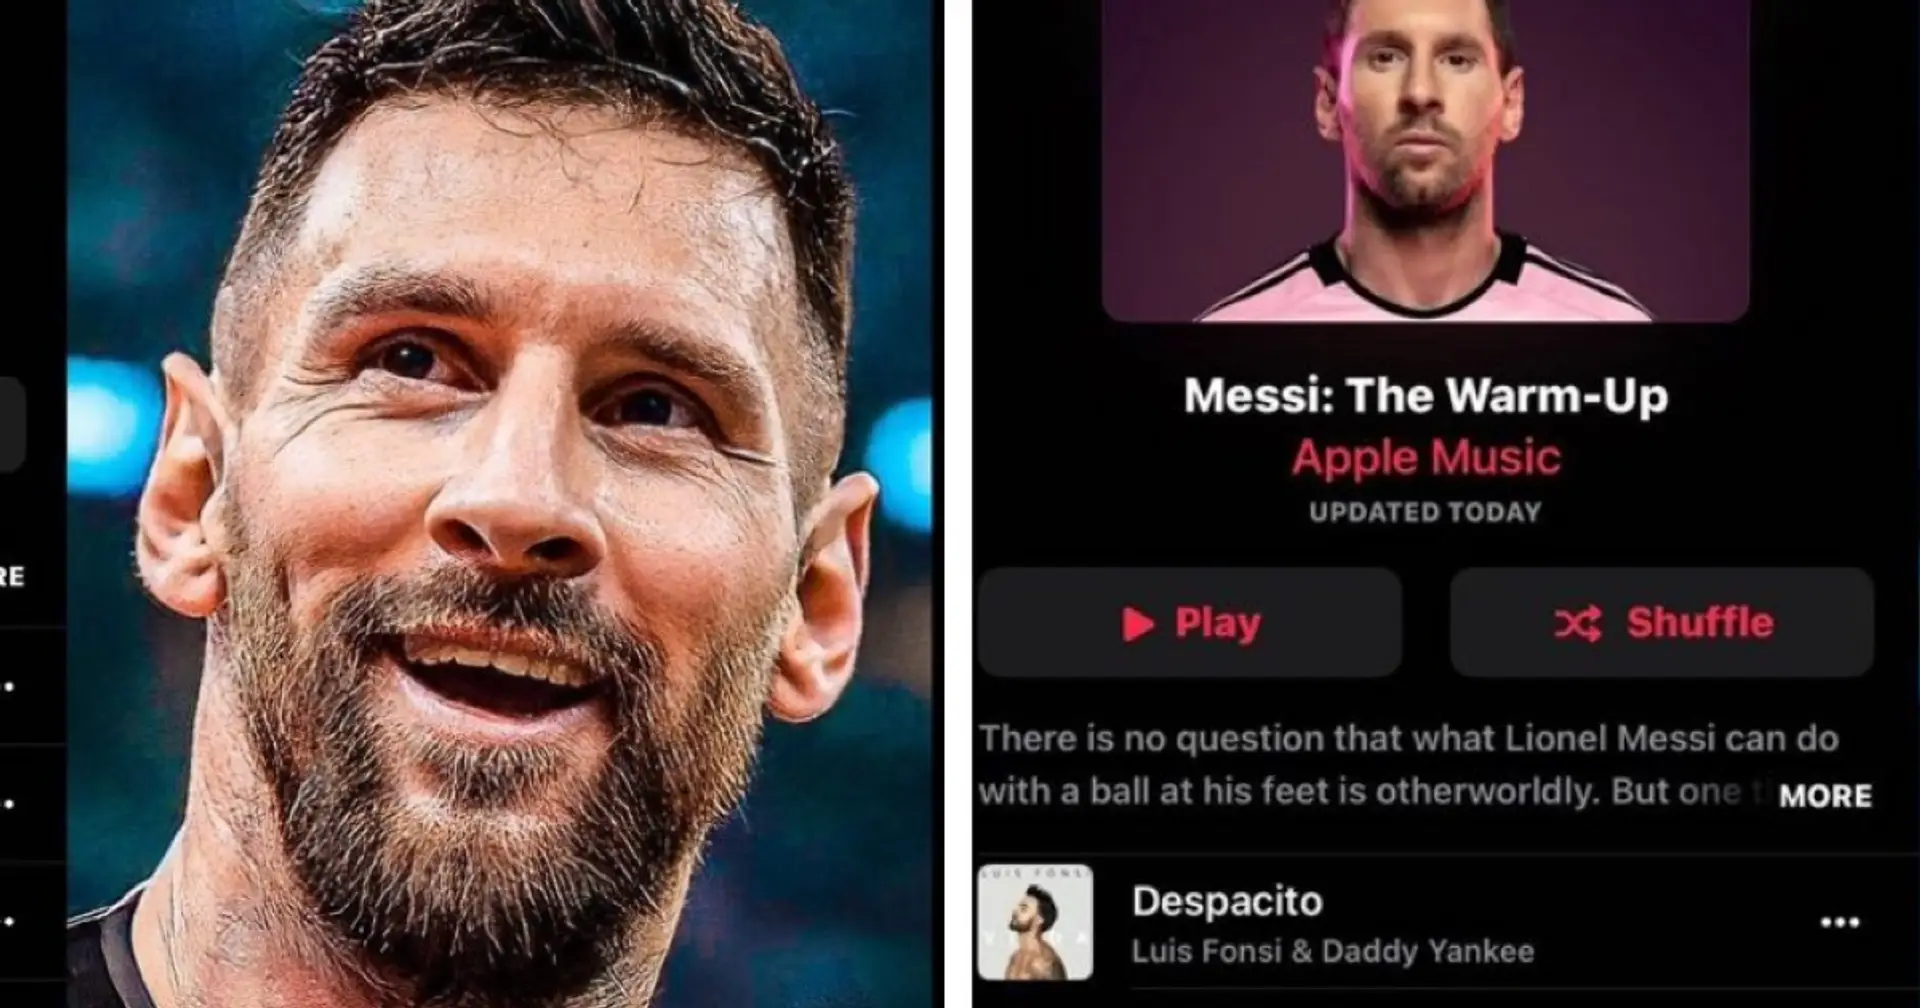 Lionel Messi hat seine Playlist von Apple Music veröffentlicht: Hier gibt es AC/DC, U2 und eine Menge argentinischer Musik